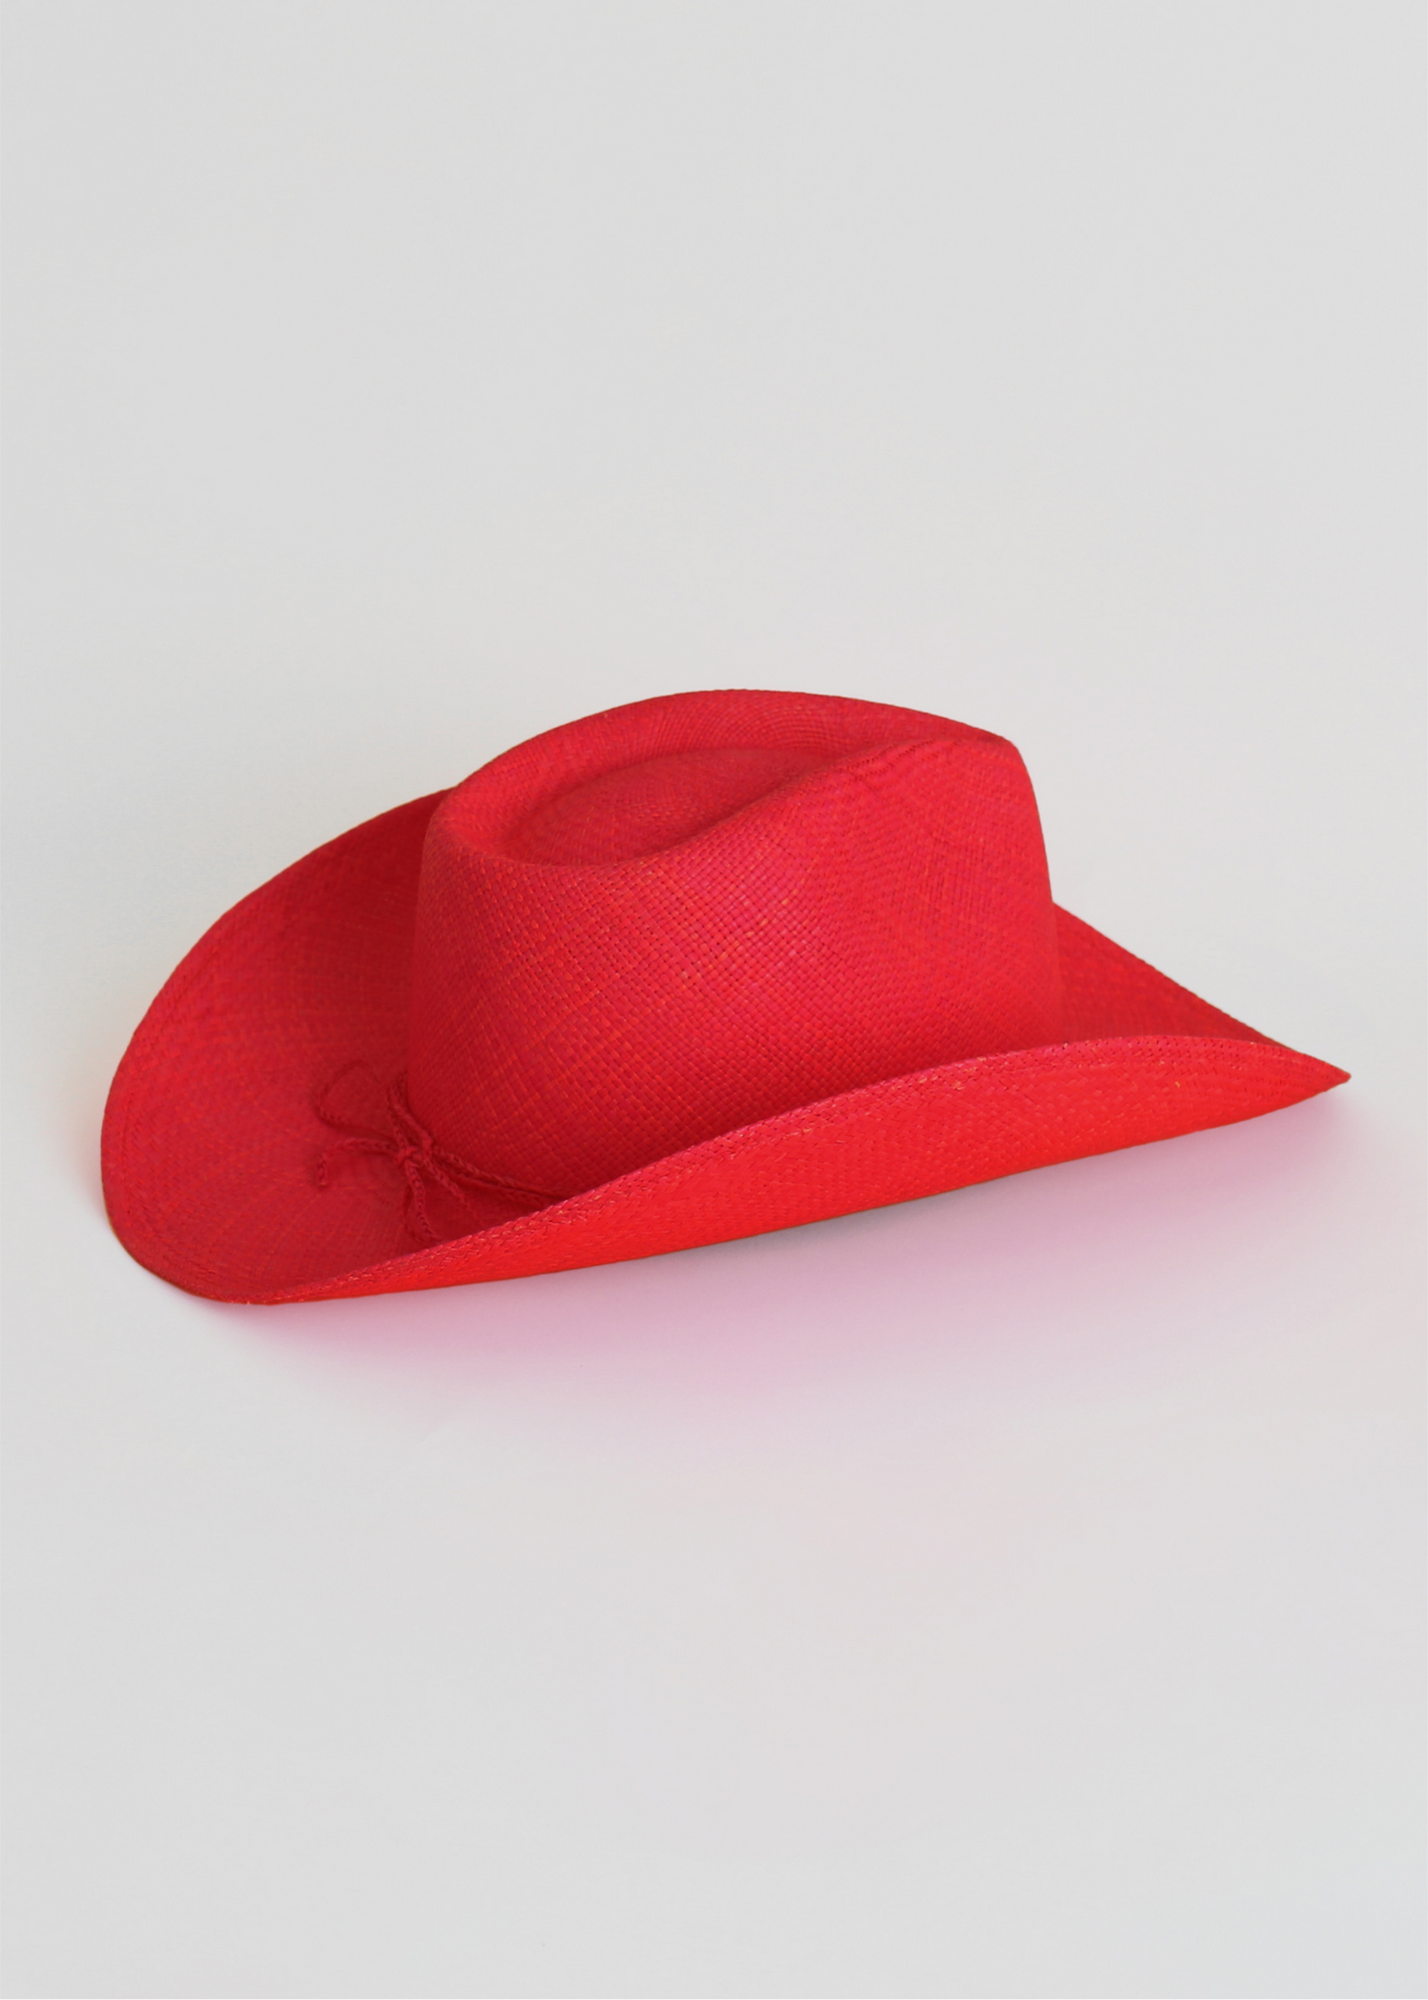 red cowboy hat